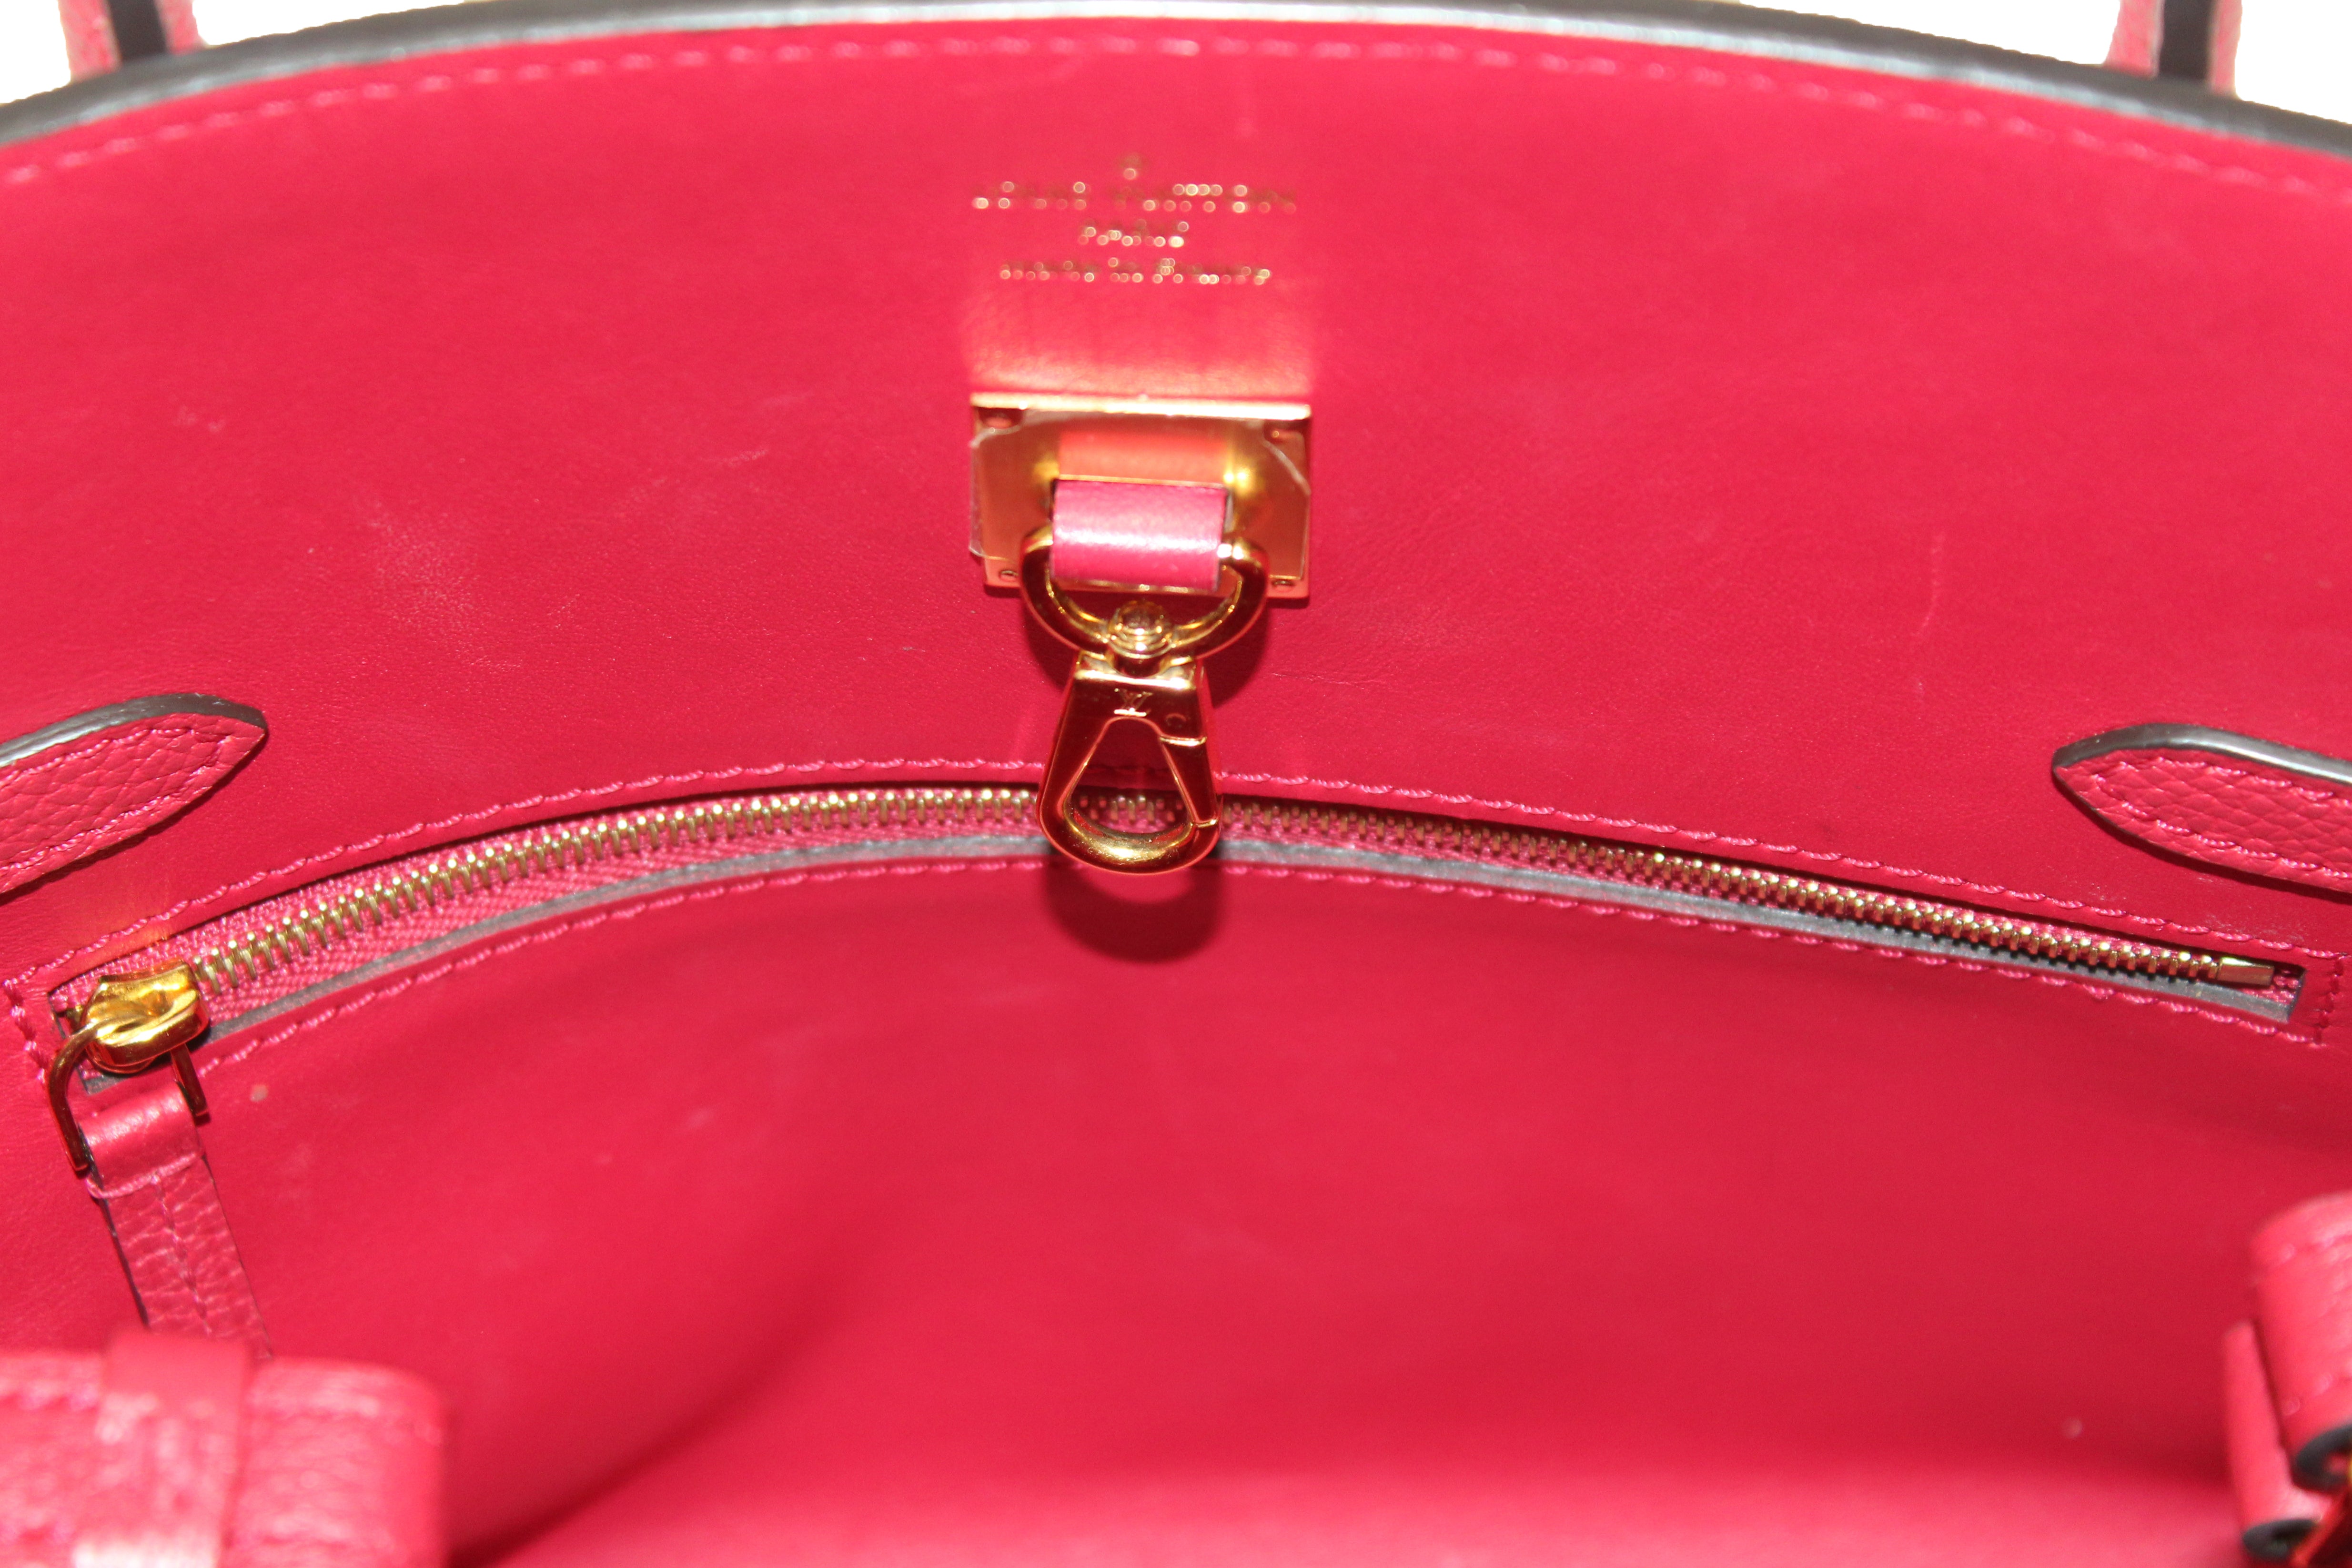 Louis Vuitton Gold Veau Nuage Milla PM Bag – The Closet